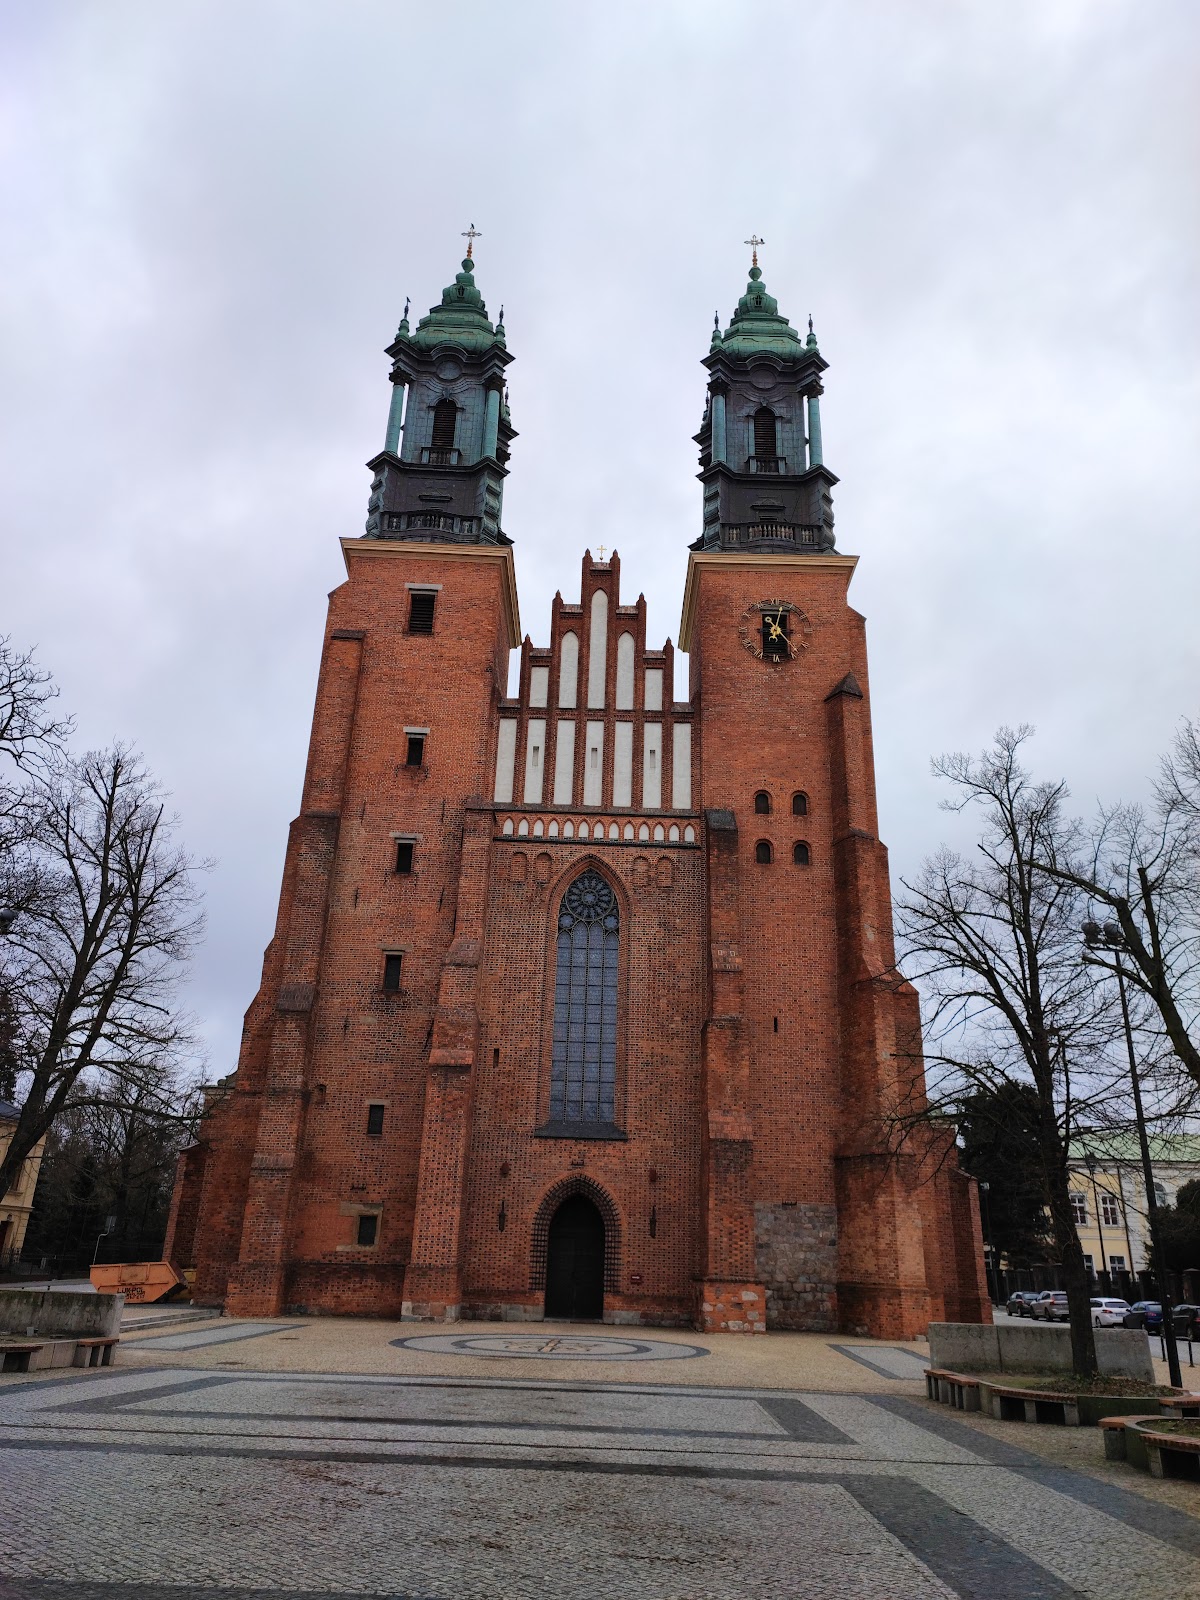 Poznań Cathedral